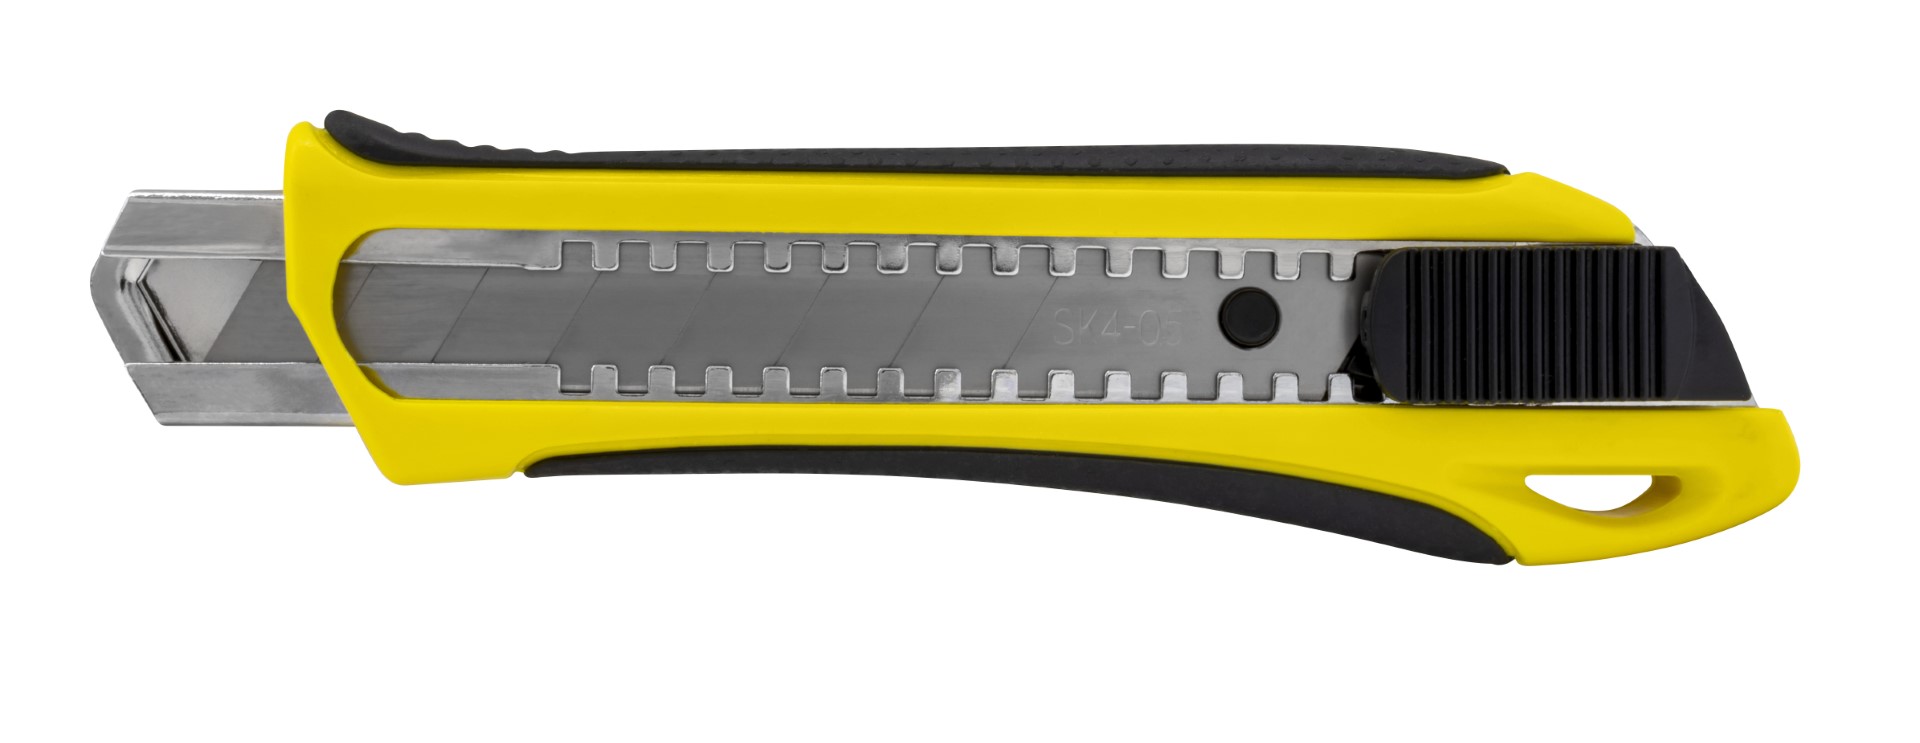 Kniv med Non-Slip gummi grep, 25 mm knivblad og automatisk lås 423557